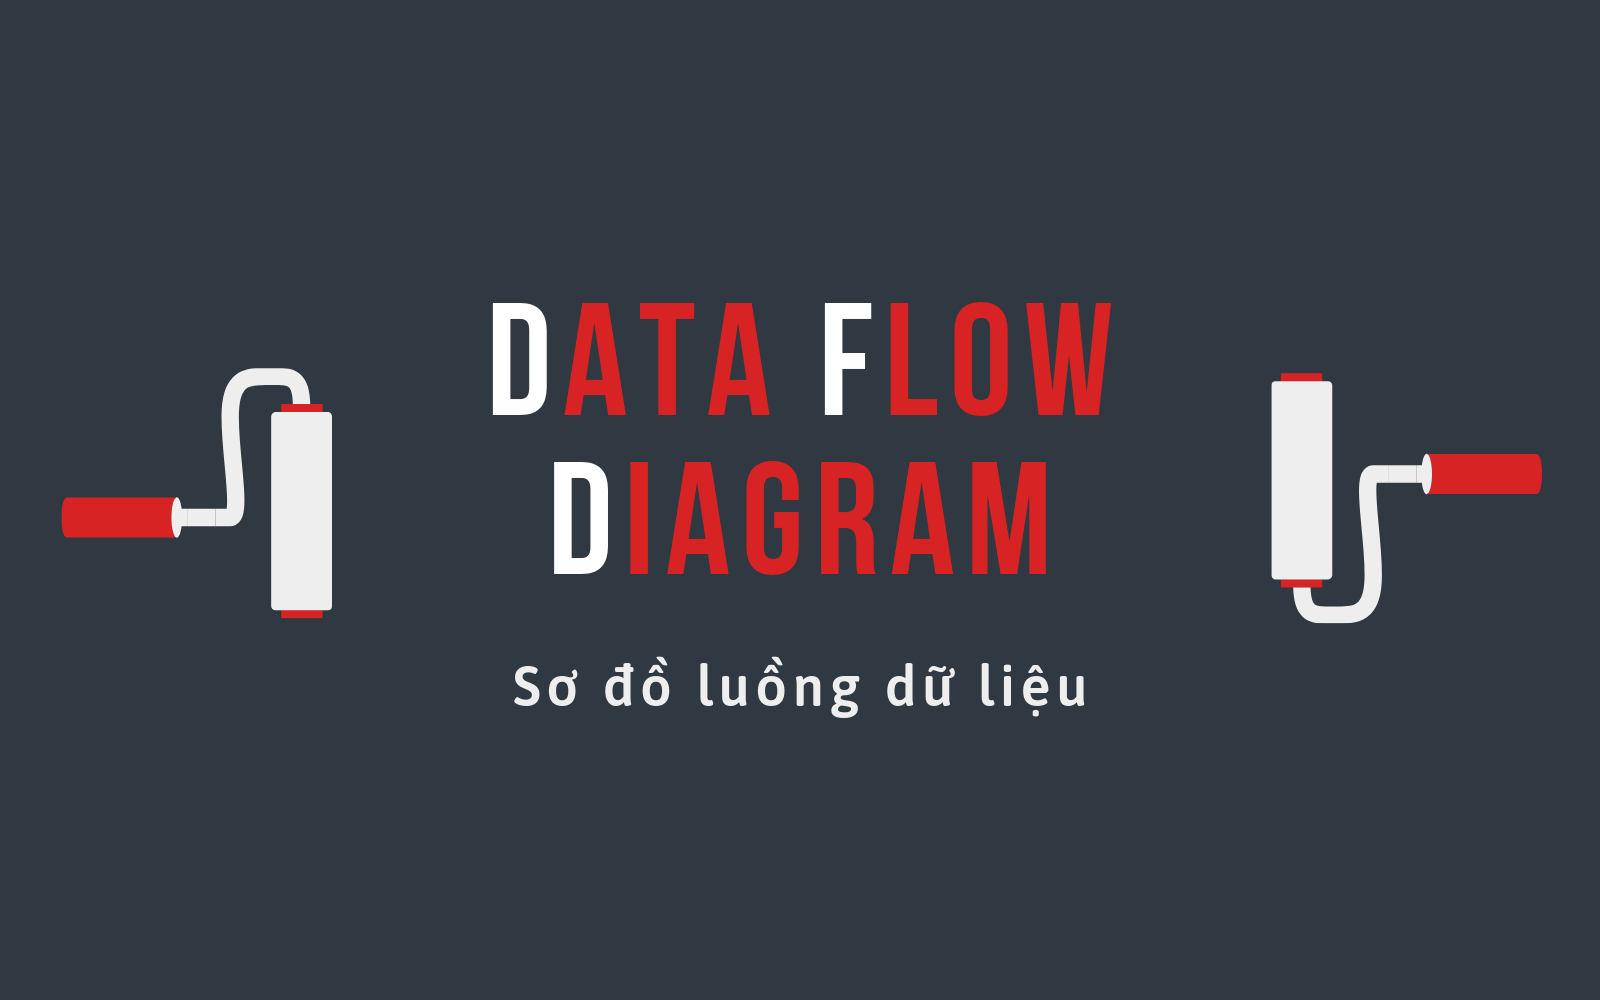 Sơ đồ luồng dữ liệu (Data Flow Diagram - DFD) là gì?